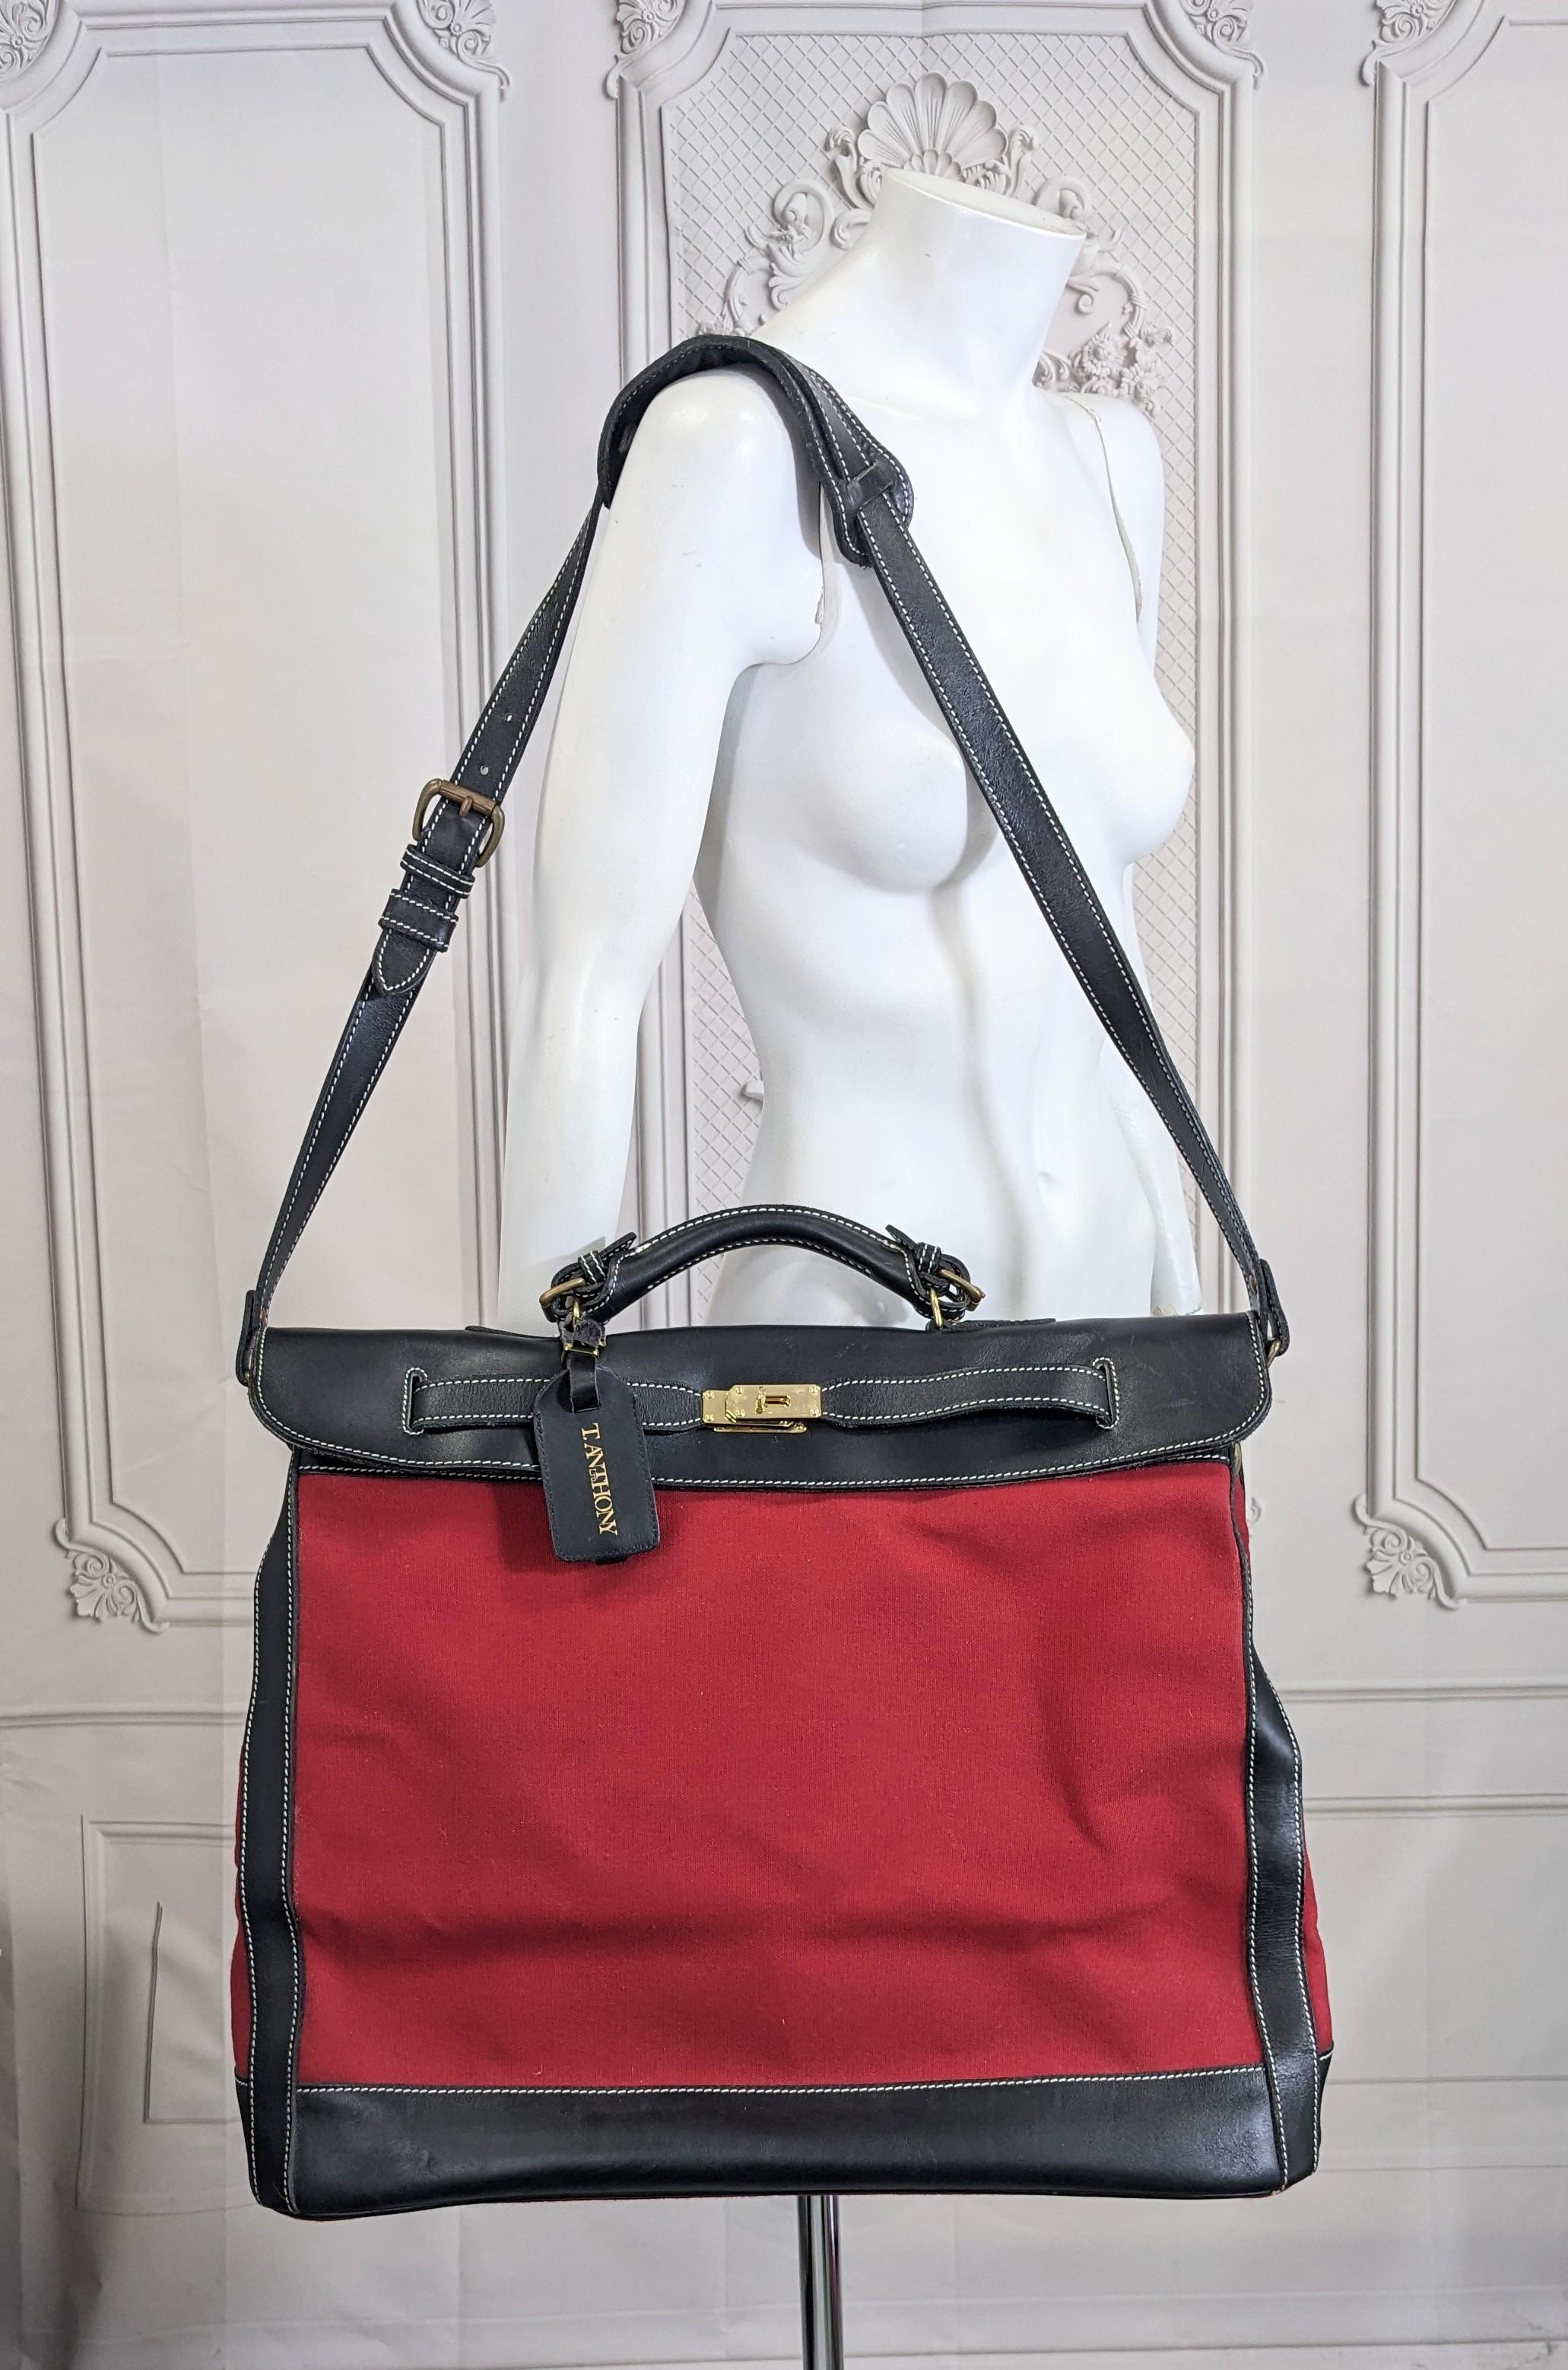 Auffällige Reisetasche aus Leder und Segeltuch im Hermes-Stil von T. Anthony aus den 1990er Jahren. Schwerer roter Baumwollcanvas gepaart mit schwarzem Kalbsleder in dieser übergroßen Reisetasche im Birkin-Stil.
Bitte beachten Sie, dass es sich um